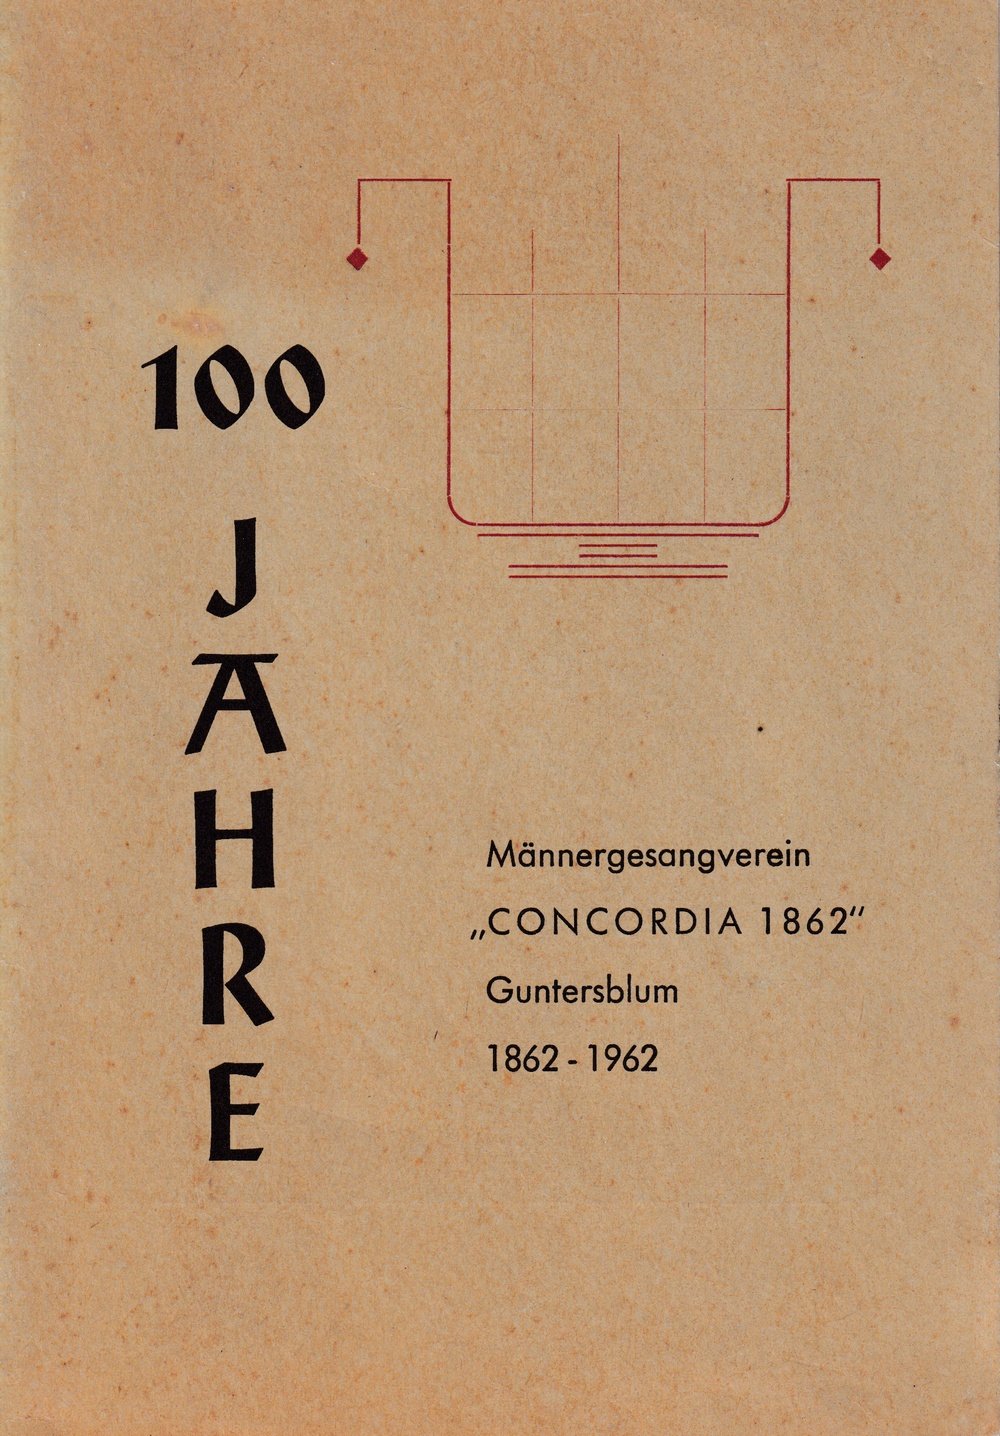 100 Jahre MGV Concordia (Kulturverein Guntersblum CC BY-NC-SA)